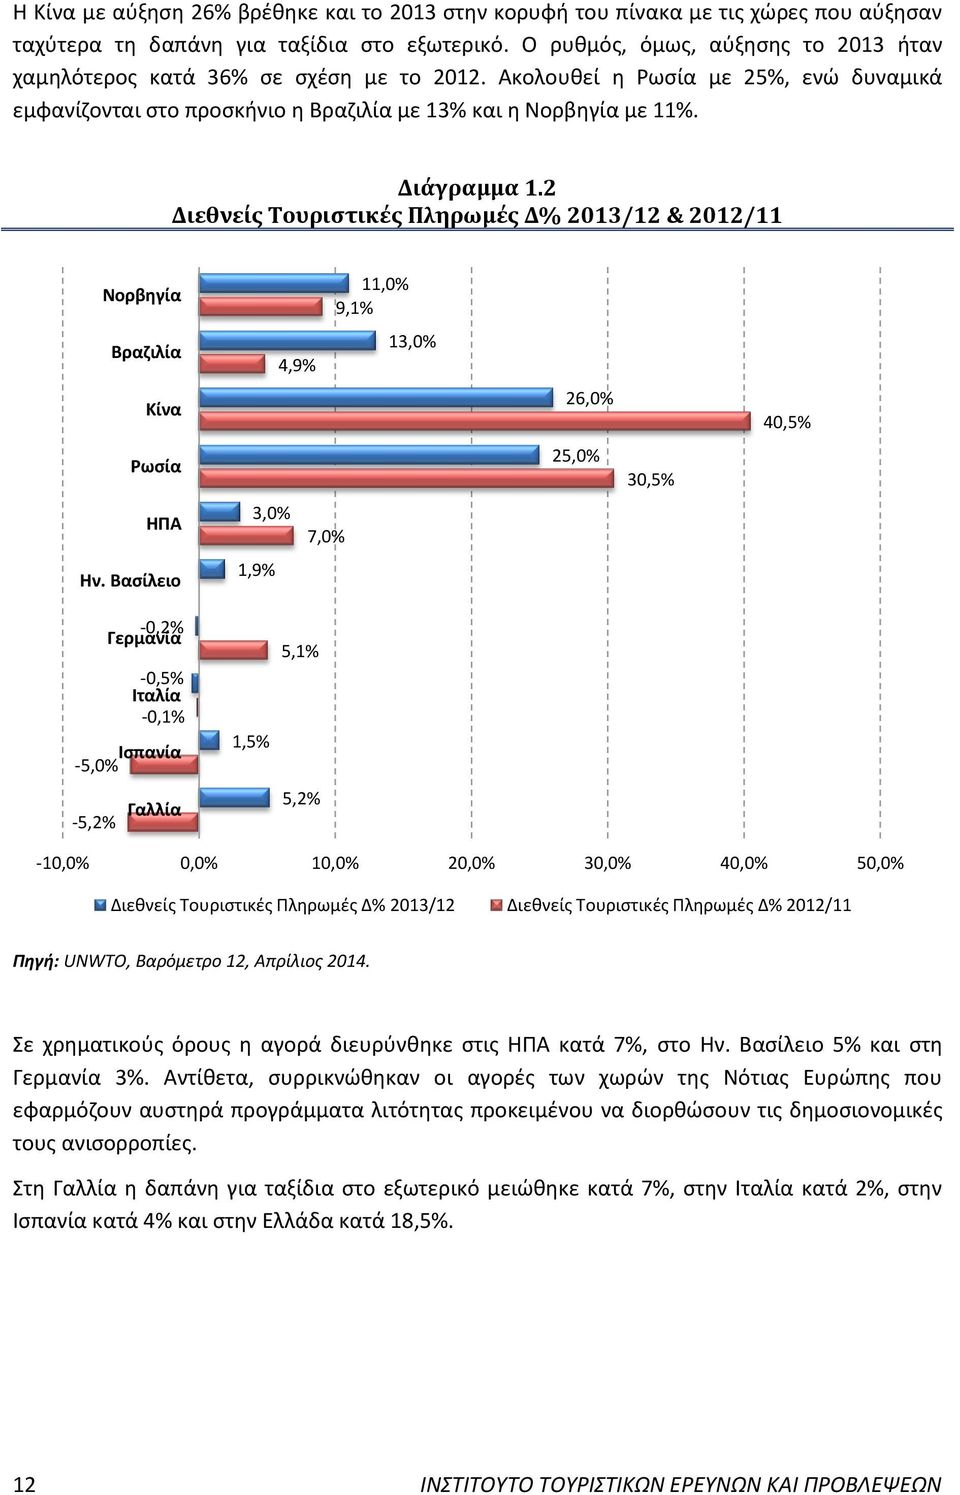 2 Διεθνείς Τουριστικές Πληρωμές Δ% 2013/12 & 2012/11 Νορβηγία Βραζιλία Κίνα Ρωσία ΗΠΑ Ην.